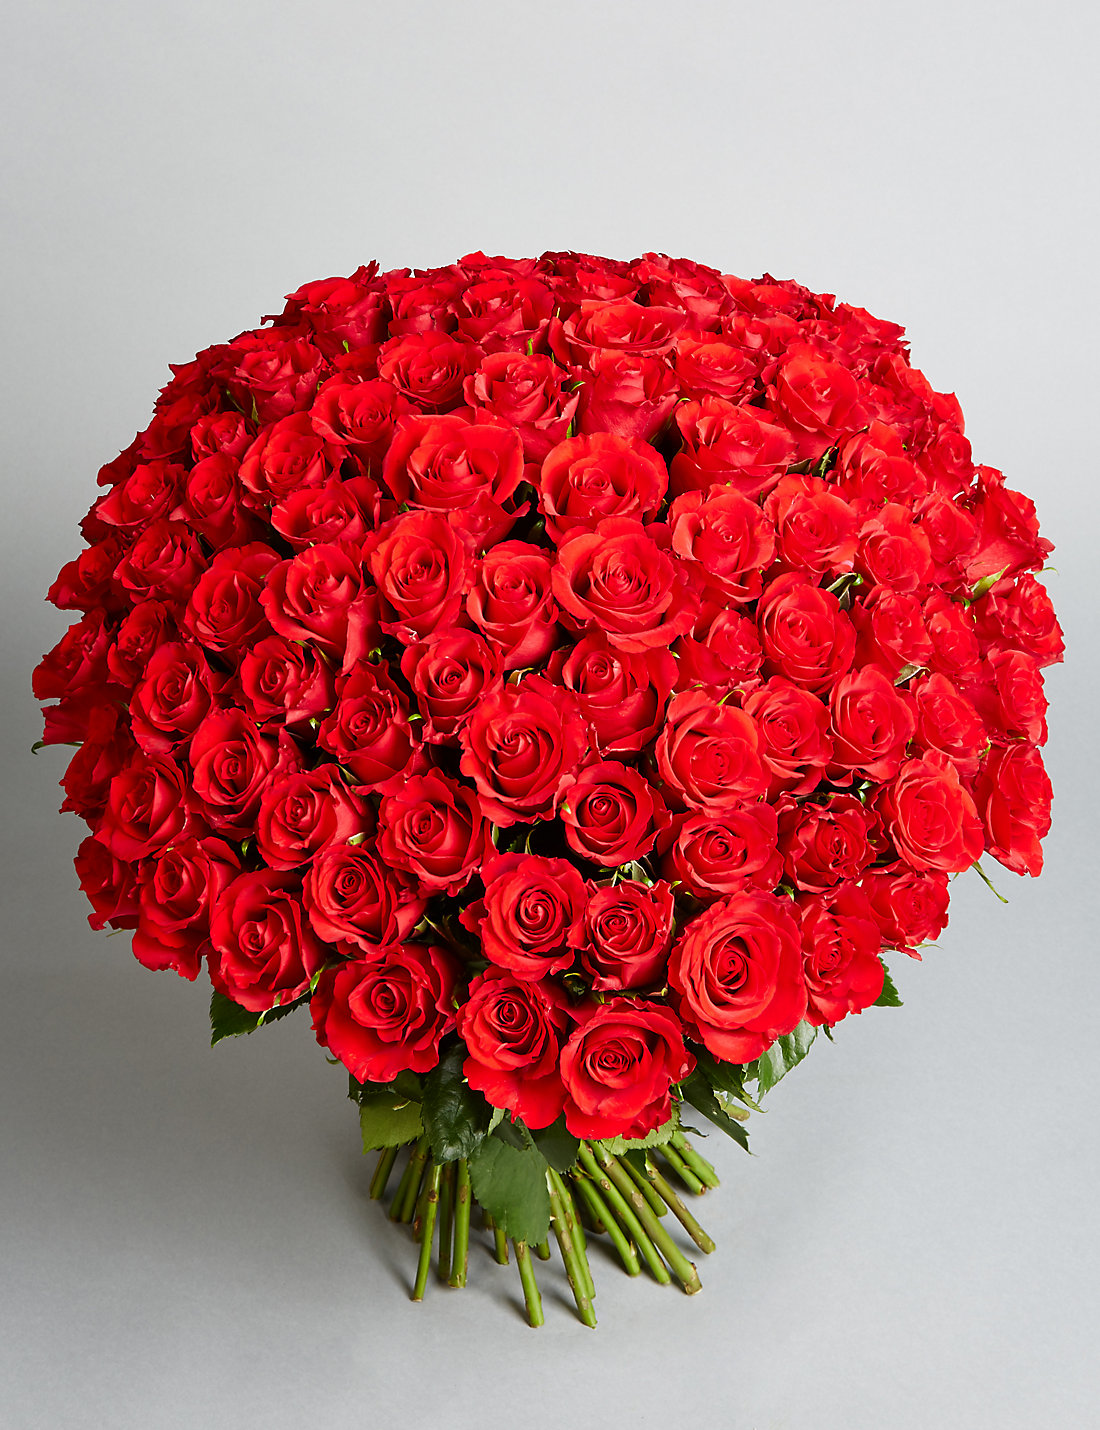 بوكيه ورد احمر , عبر لمن تحب عن حبك بباقة من الورود الحمراء - عيون